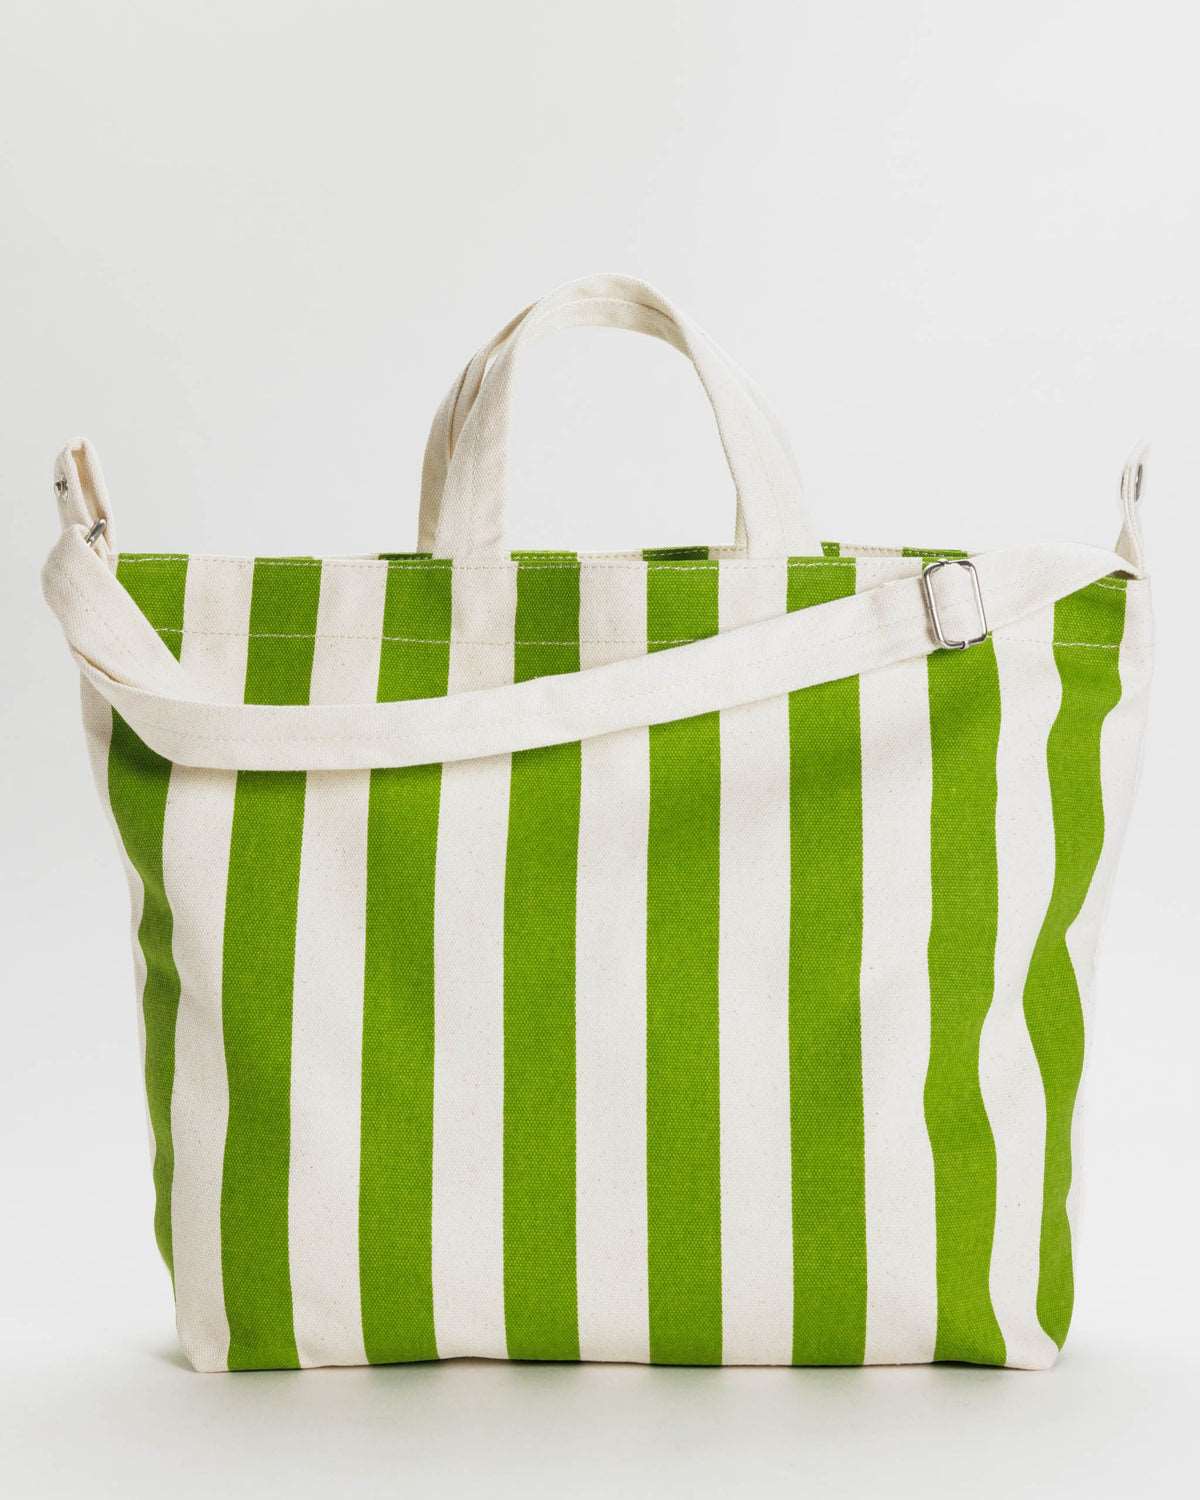 BAGGU - Horizontal Duck Bag - Green Awning Stripe